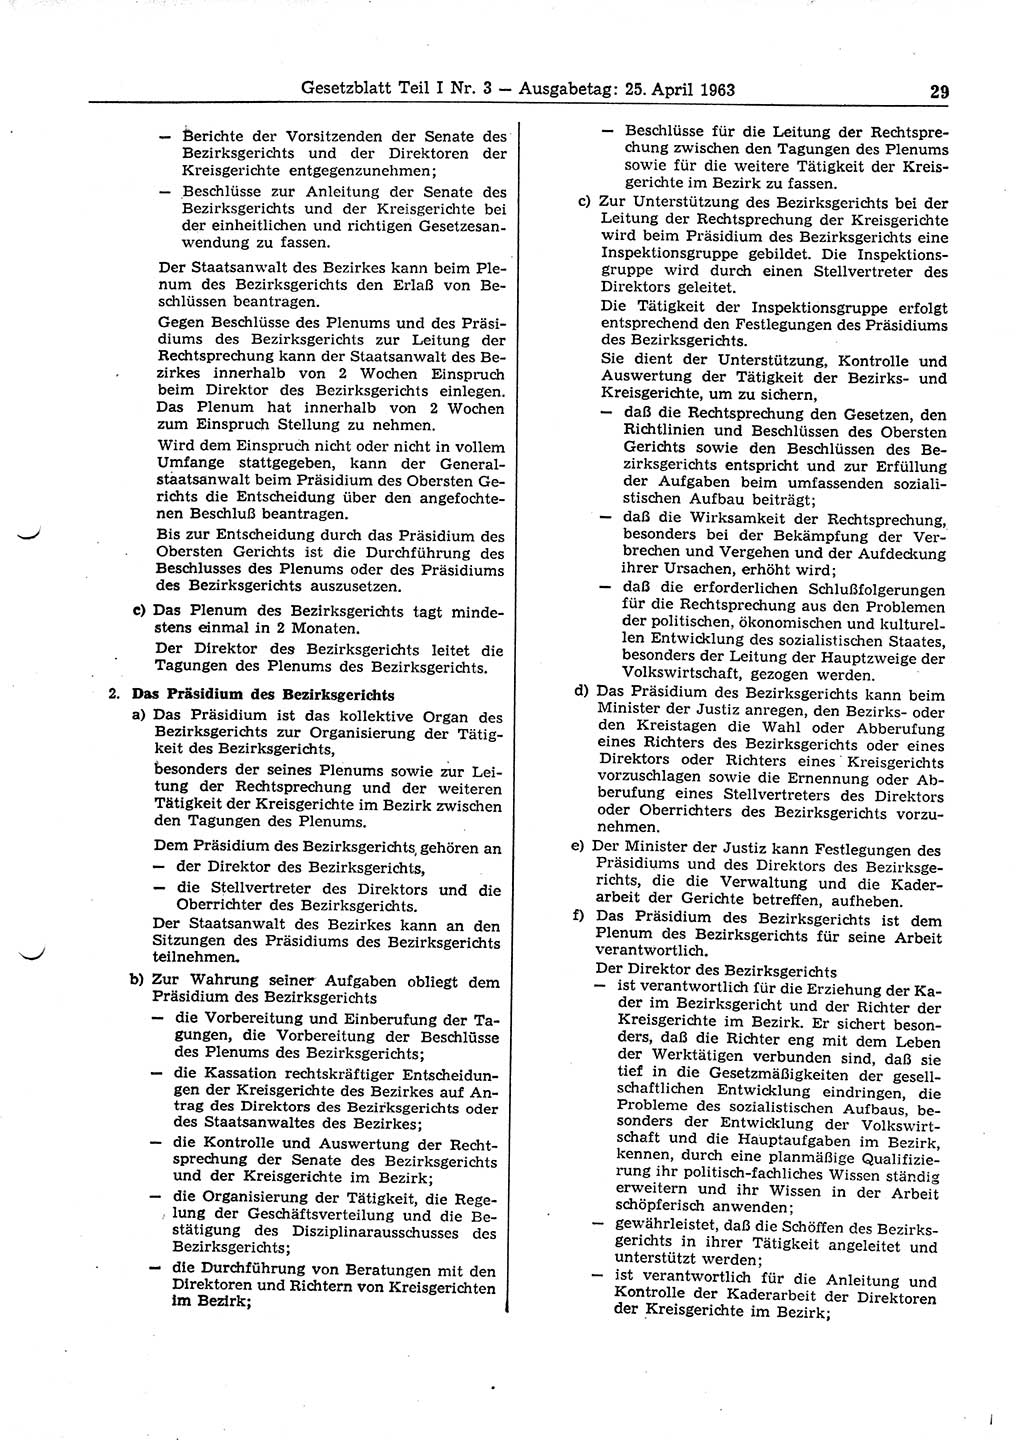 Gesetzblatt (GBl.) der Deutschen Demokratischen Republik (DDR) Teil Ⅰ 1963, Seite 29 (GBl. DDR Ⅰ 1963, S. 29)